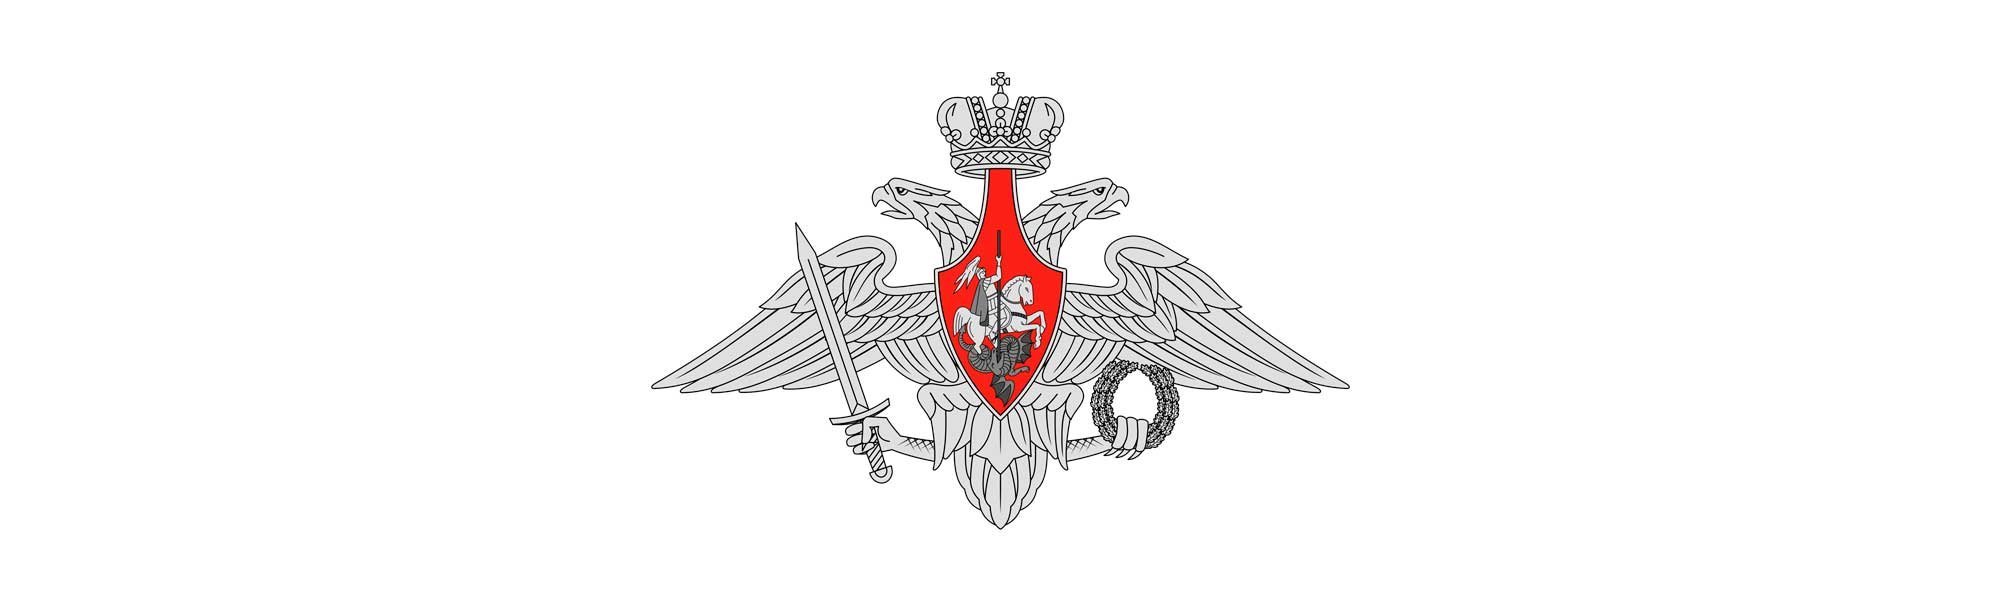 Герб министерства обороны рф на прозрачном фоне фото